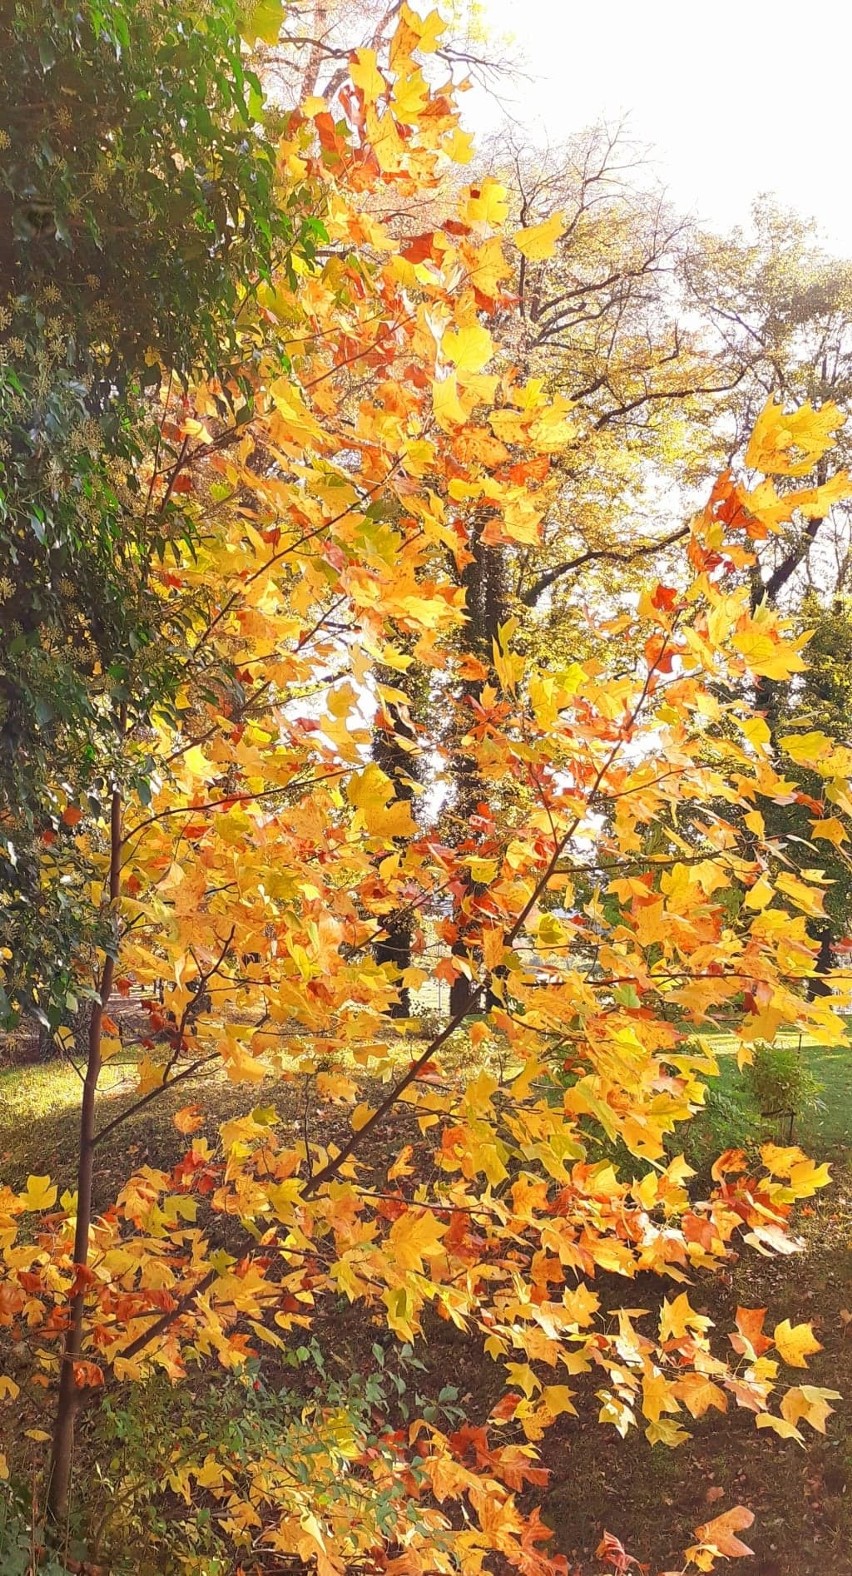 Piękna jesienna sceneria w parku przy Zamku Dubiecko. Zjawiskowe barwy oszałamiają. Przekonajcie się sami! [ZDJĘCIA]